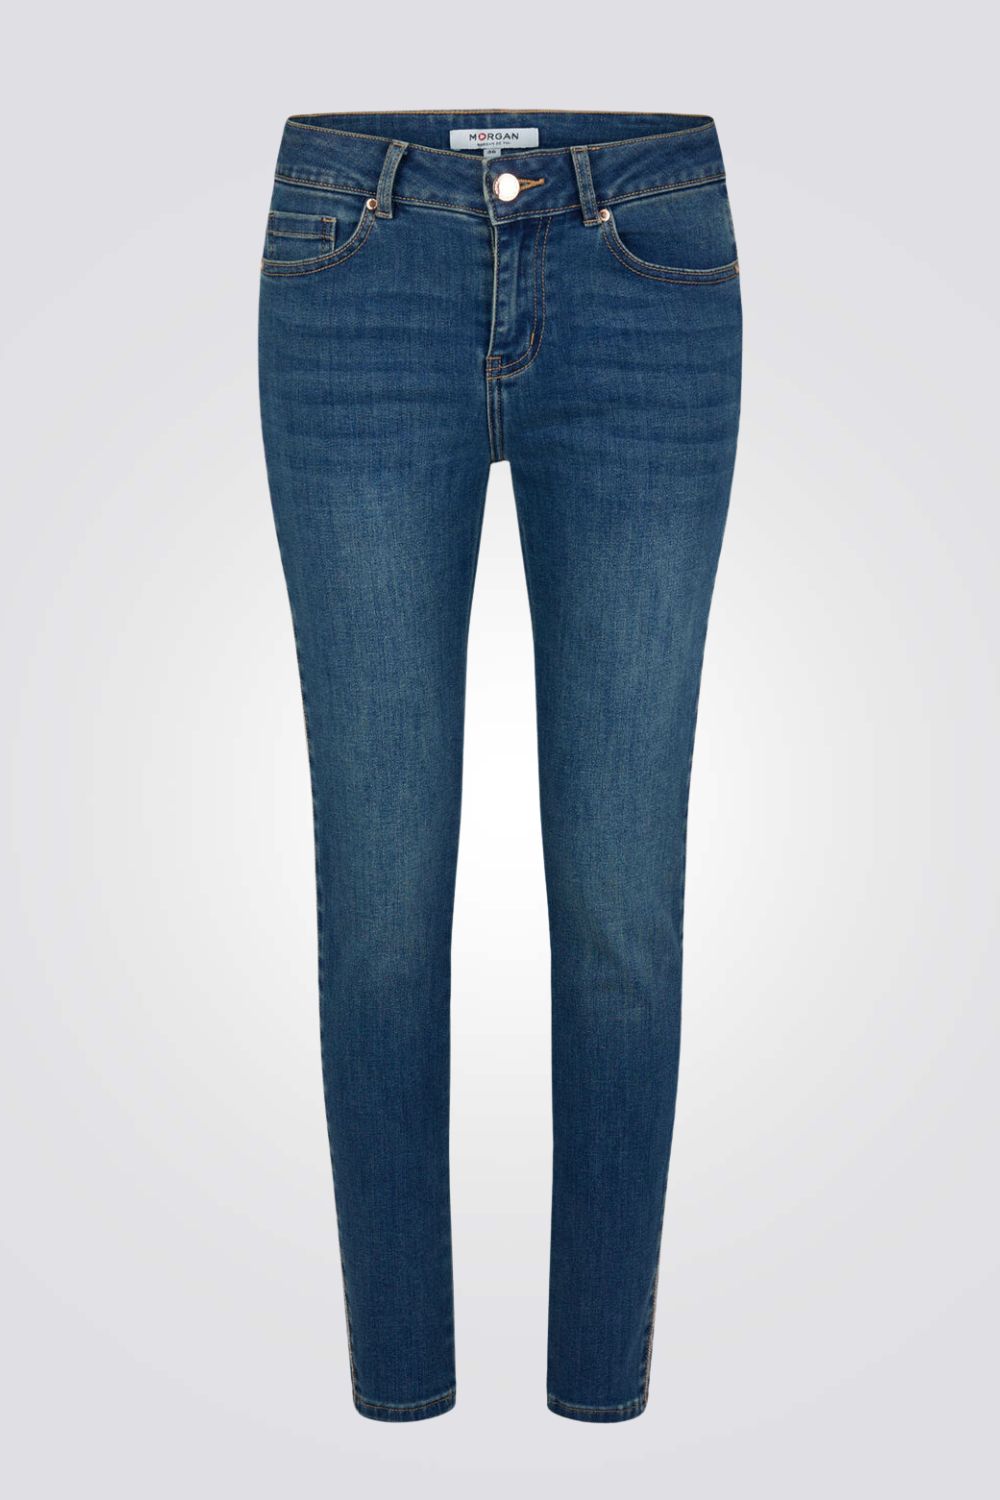 ג'ינס סקיני בצבע כחול כהה